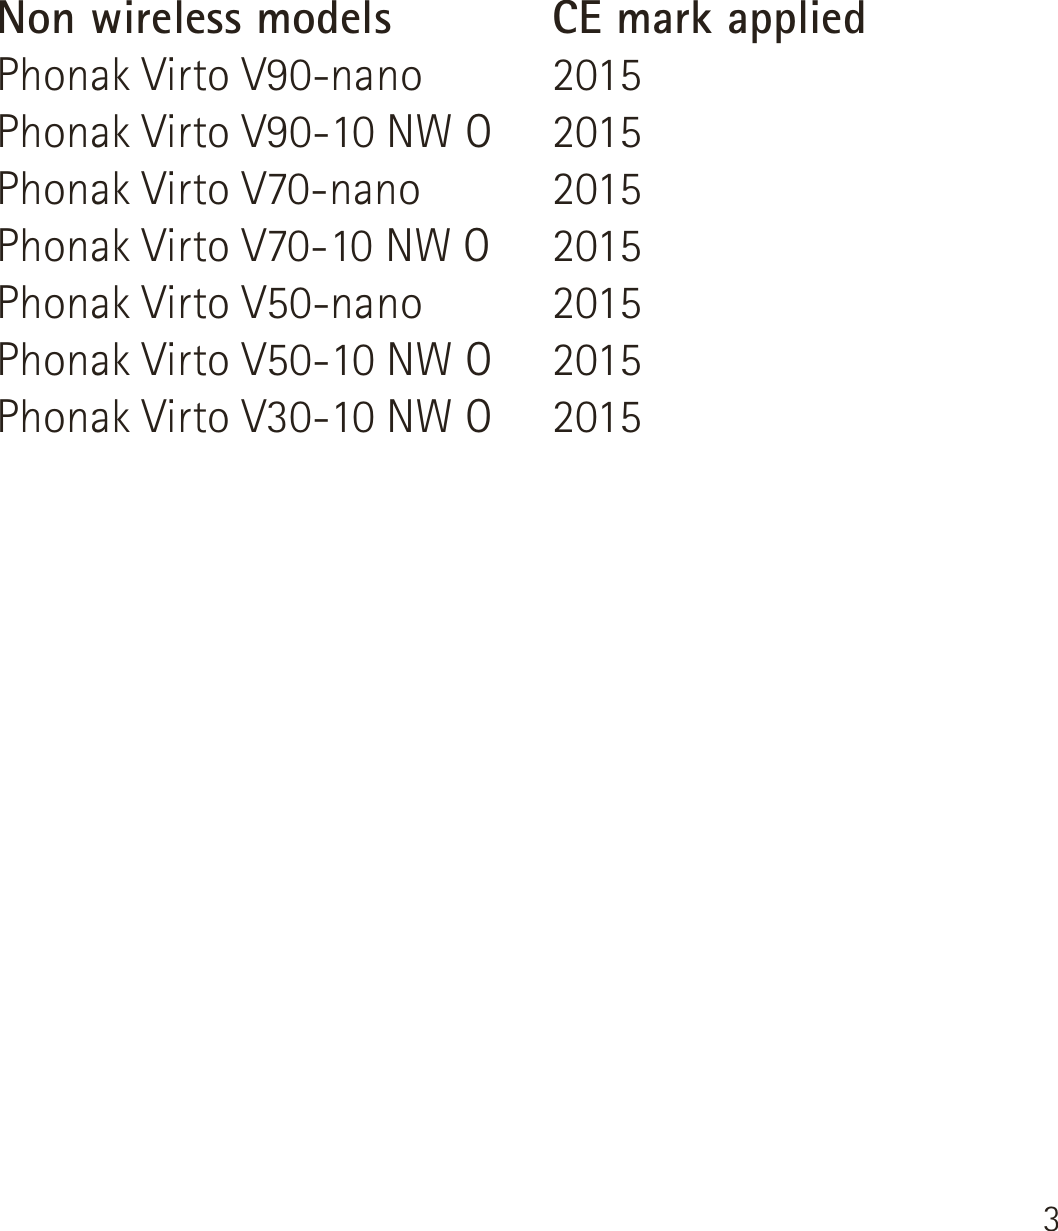 3Non wireless modelsPhonak Virto V90-nanoPhonak Virto V90-10 NW OPhonak Virto V70-nanoPhonak Virto V70-10 NW OPhonak Virto V50-nanoPhonak Virto V50-10 NW OPhonak Virto V30-10 NW OCE mark applied2015201520152015201520152015